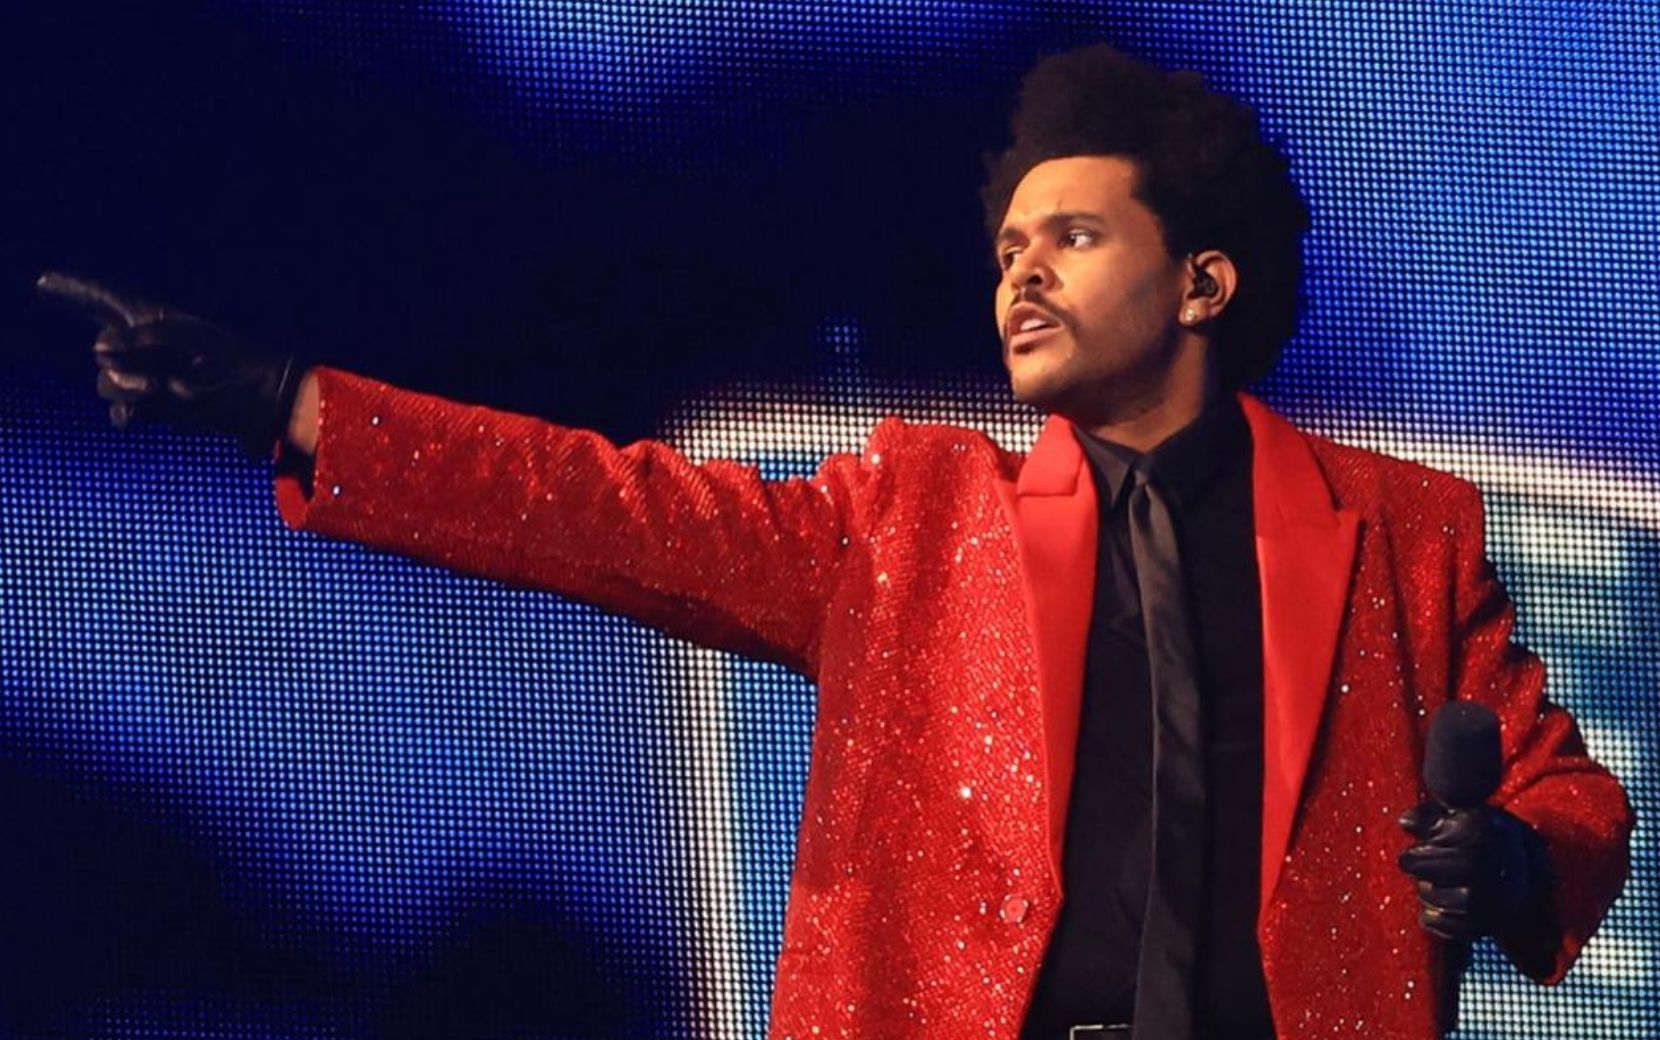 Histórico! The Weeknd apresenta seus maiores hits em show épico no intervalo do Super Bowl 2021